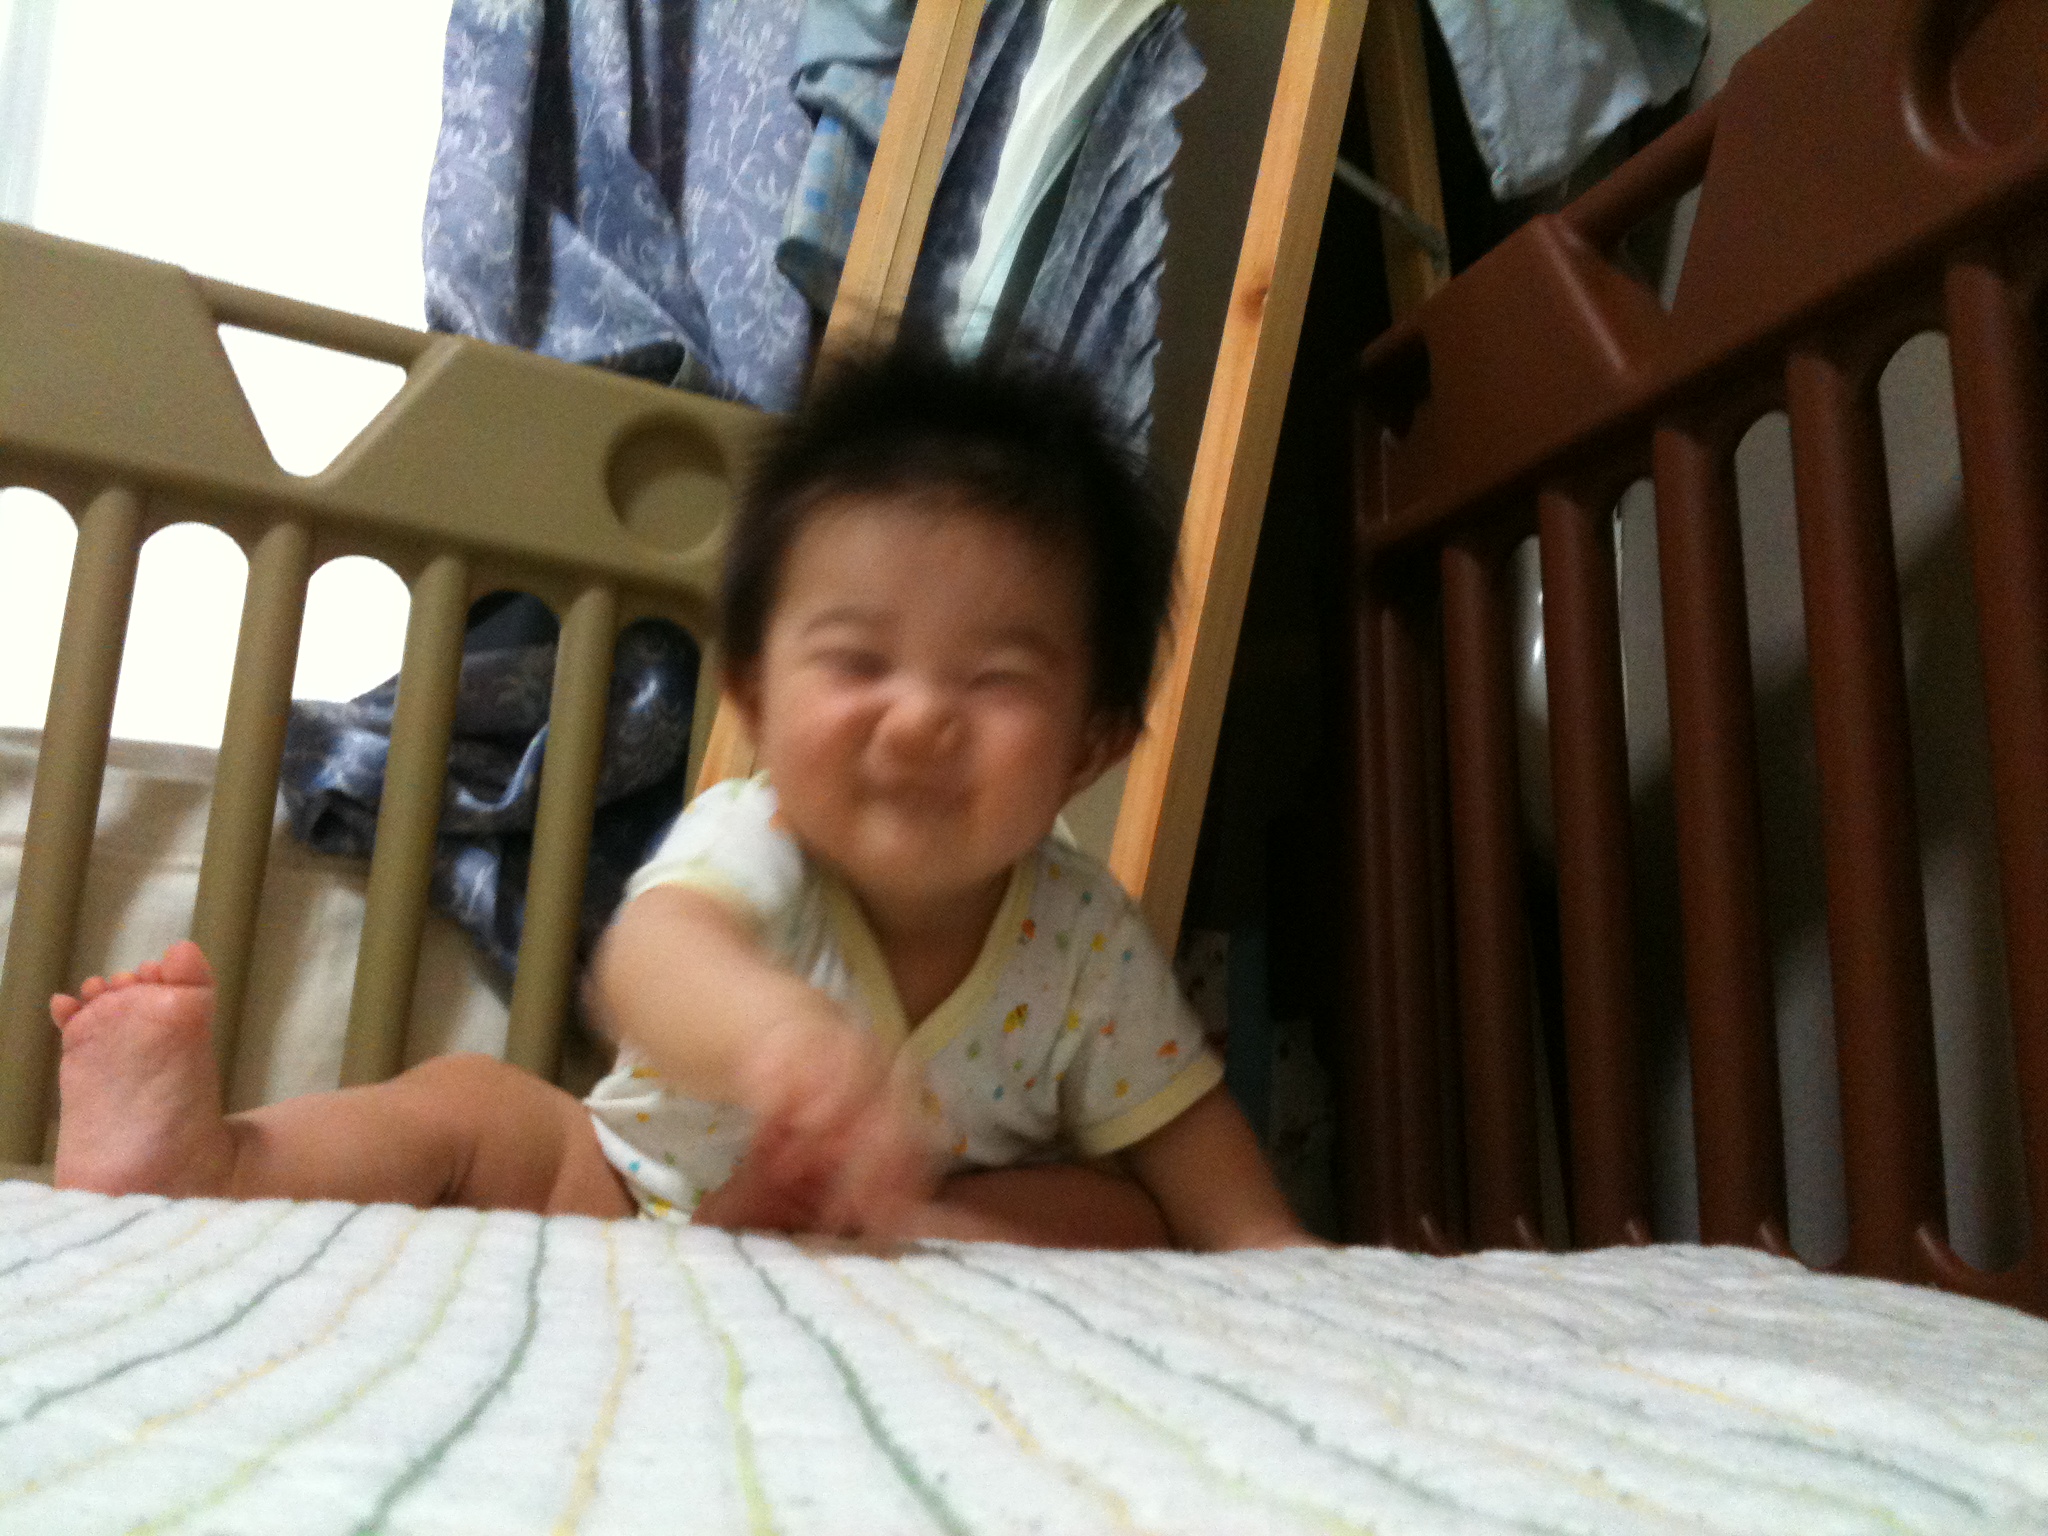 baby laughing while sitting on crib next to man